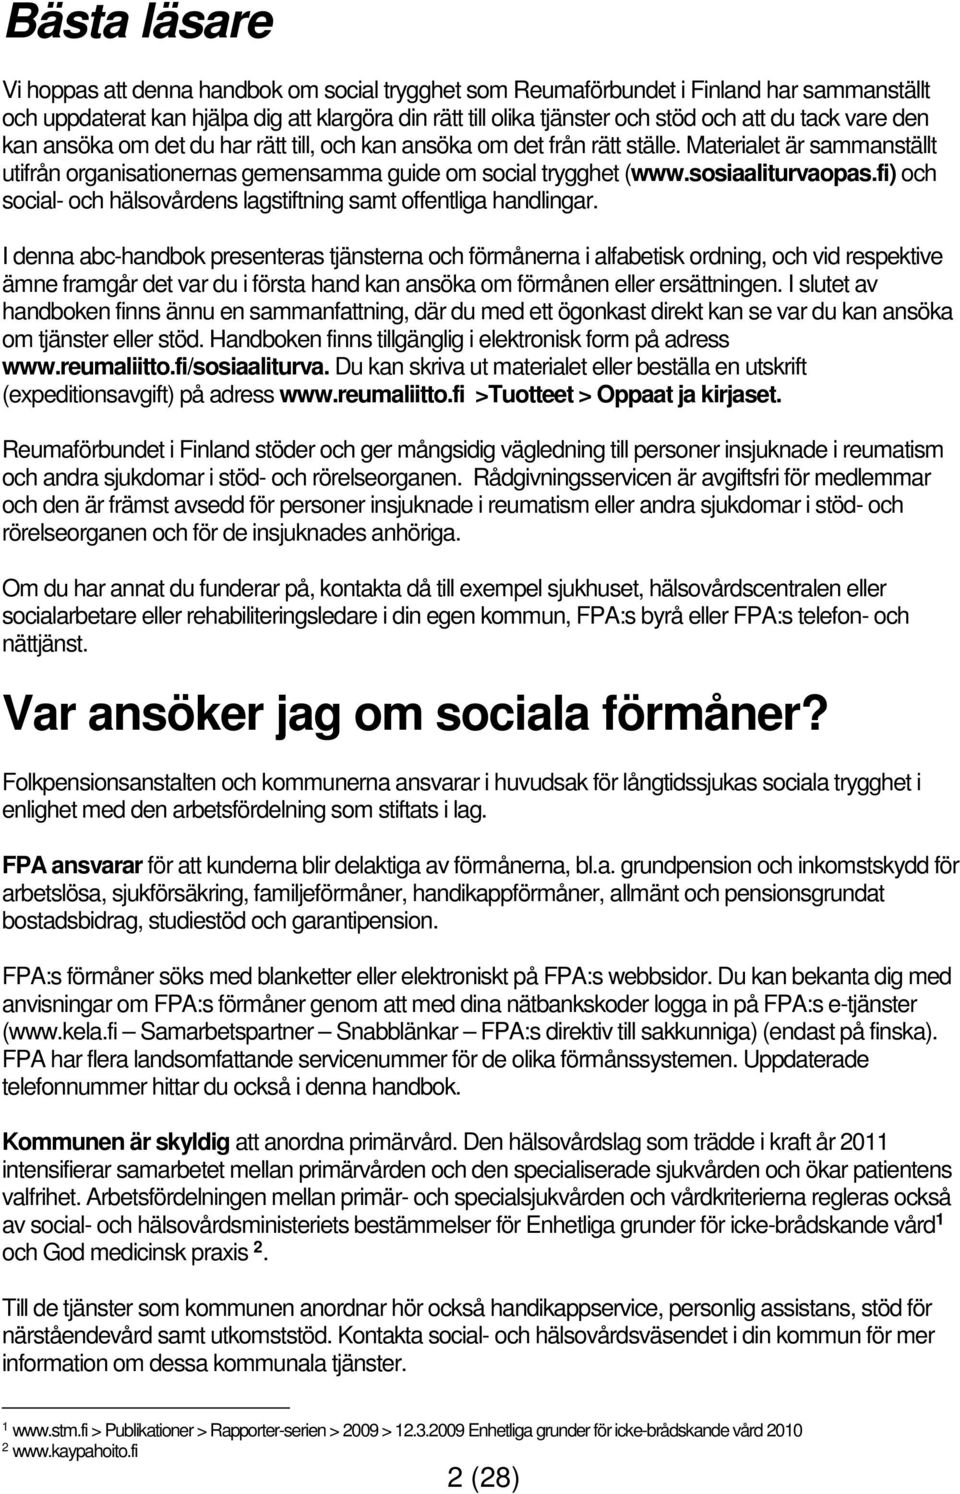 sosiaaliturvaopas.fi) och social- och hälsovårdens lagstiftning samt offentliga handlingar.